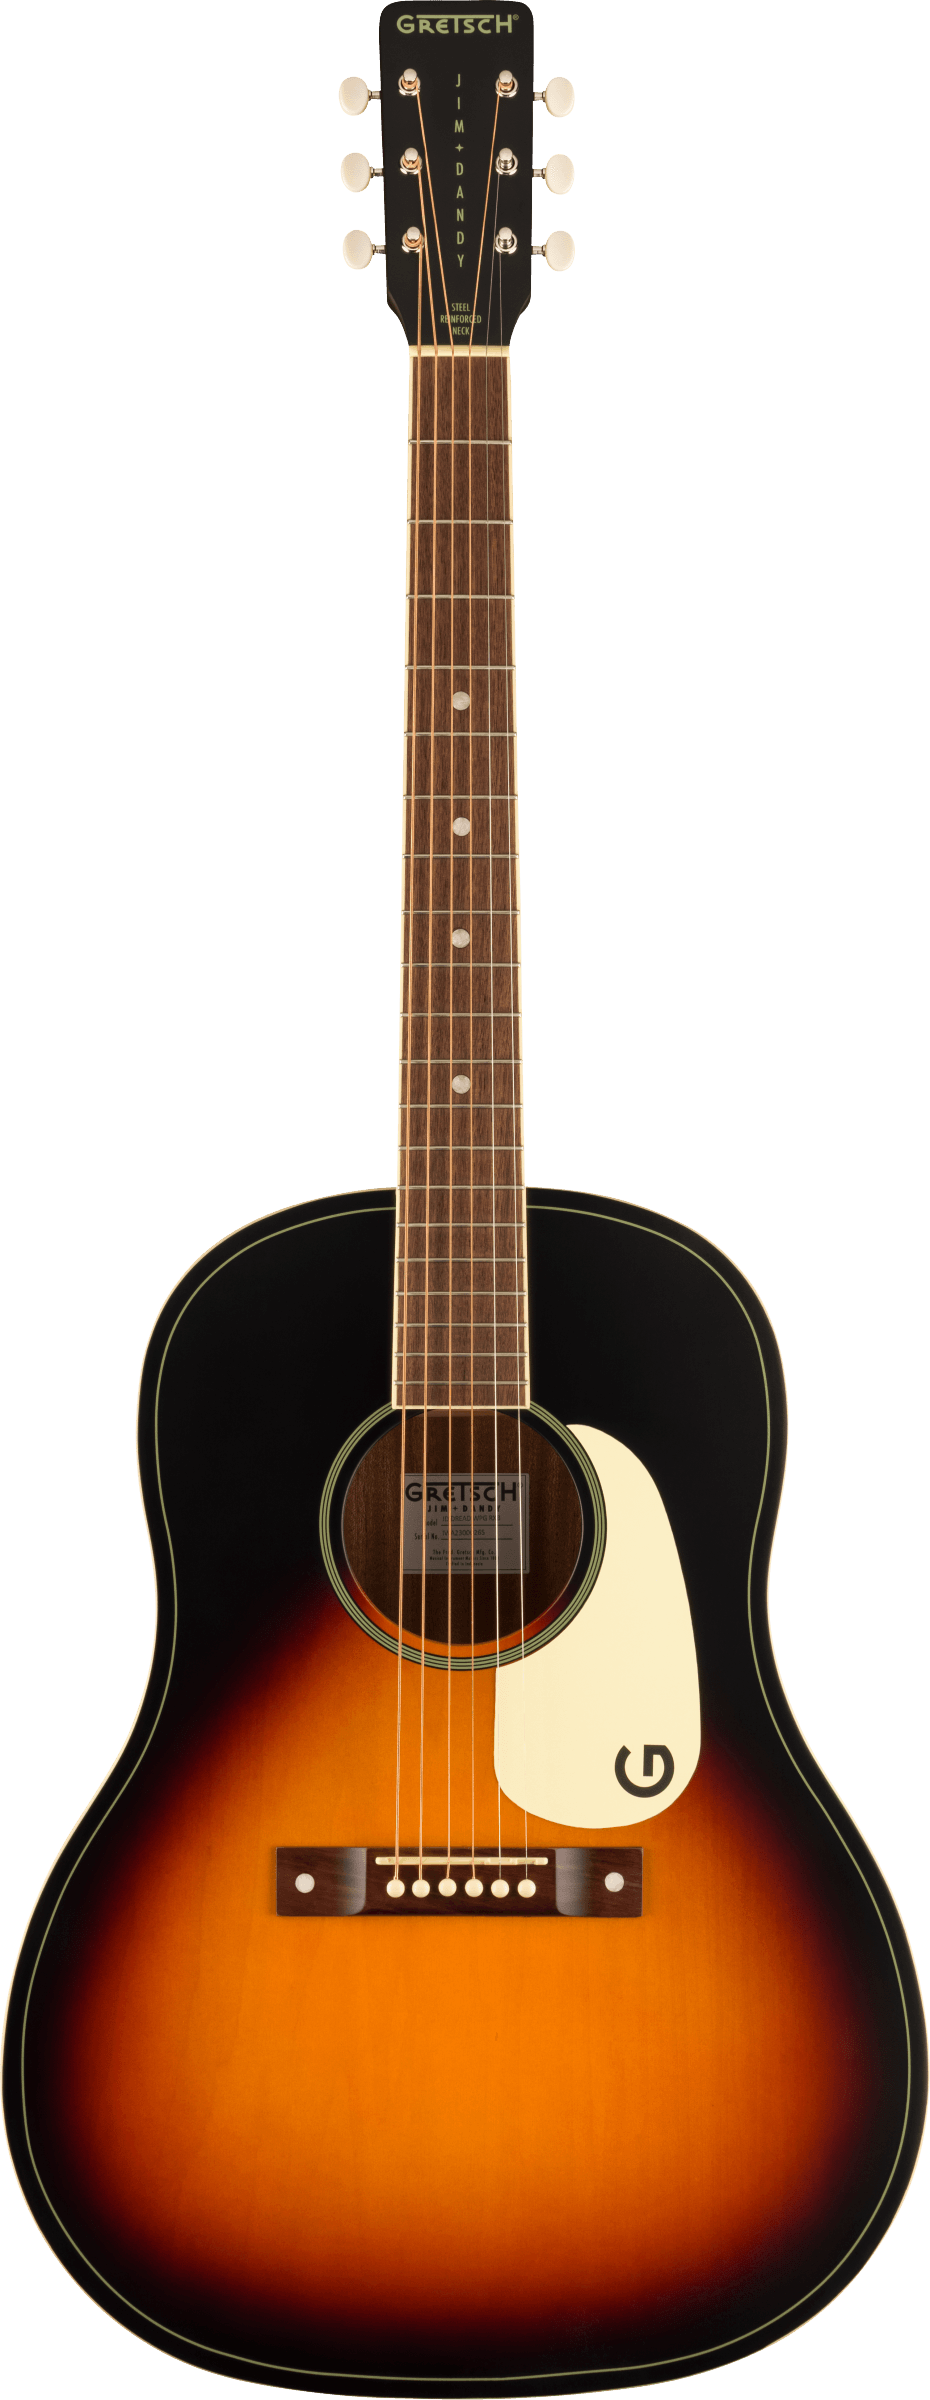 Gretsch Jim Dandy Dreadnought Acoustic Guitar, Rex Burst (NEW)